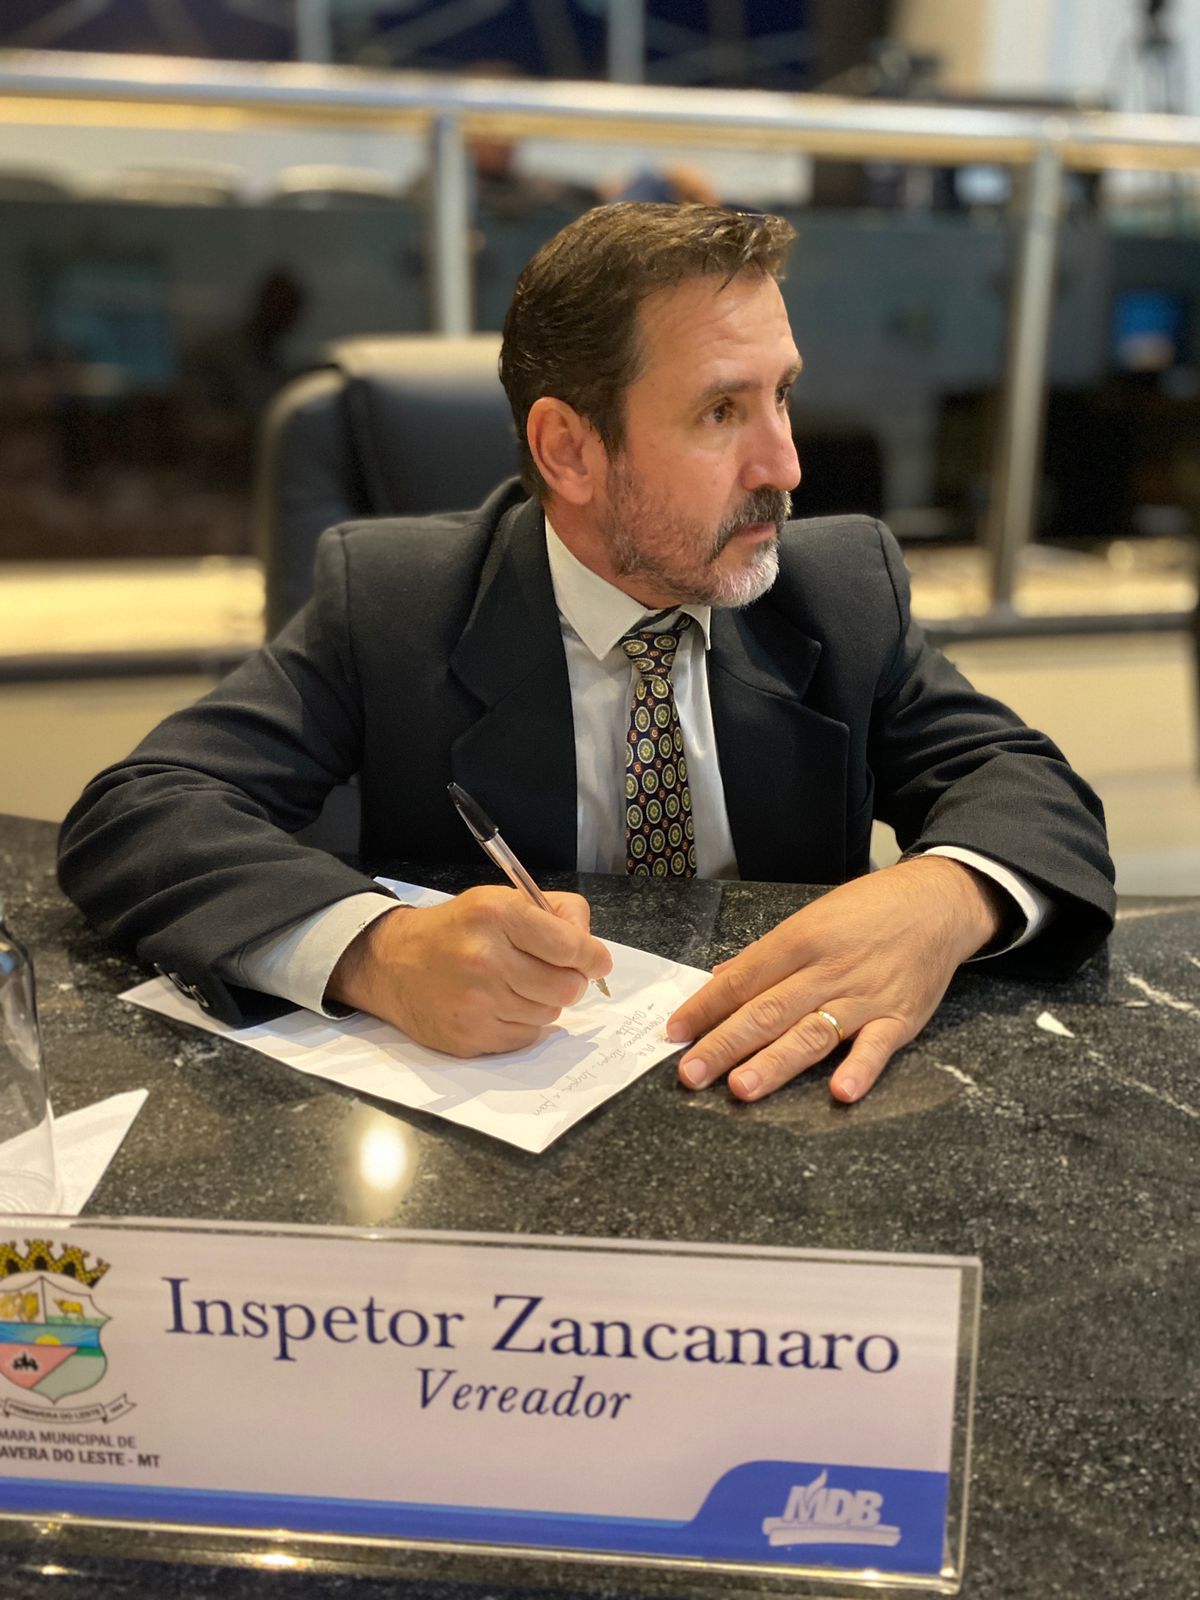 Vereador Zancanaro trabalha para viabilizar isenção de pedágio para pequenos produtores